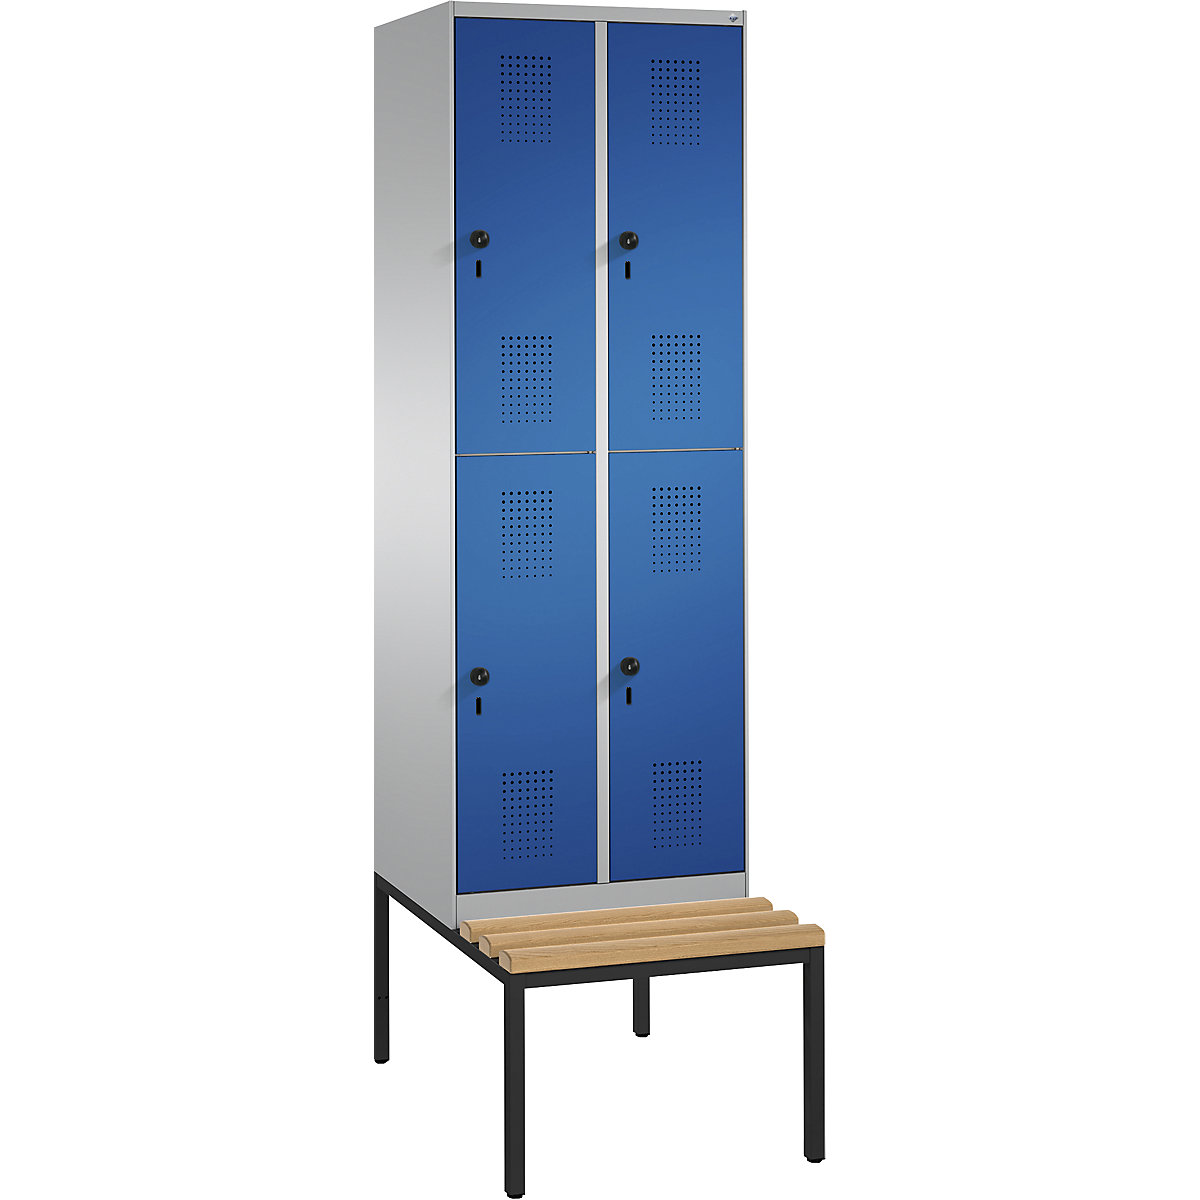 Garderobna omara EVOLO, dvonadstropna, s klopjo – C+P, 2 x 2 predelka, širina razdelka 300 mm, bela aluminijasta / encijan modra-16